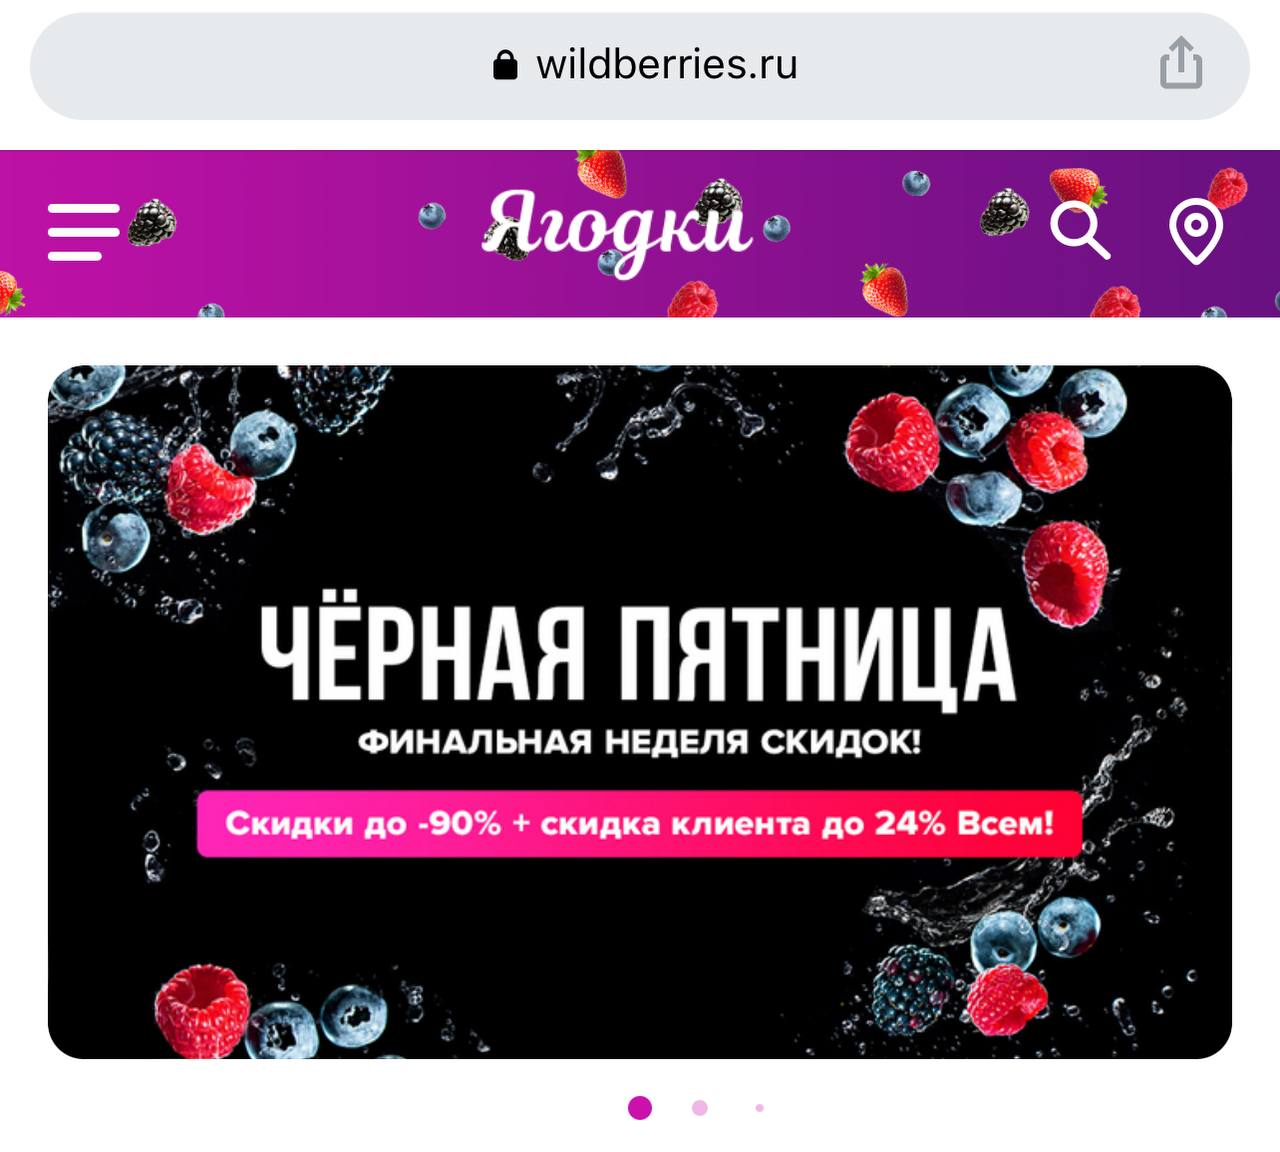 Wildberries перевод на русский что означает